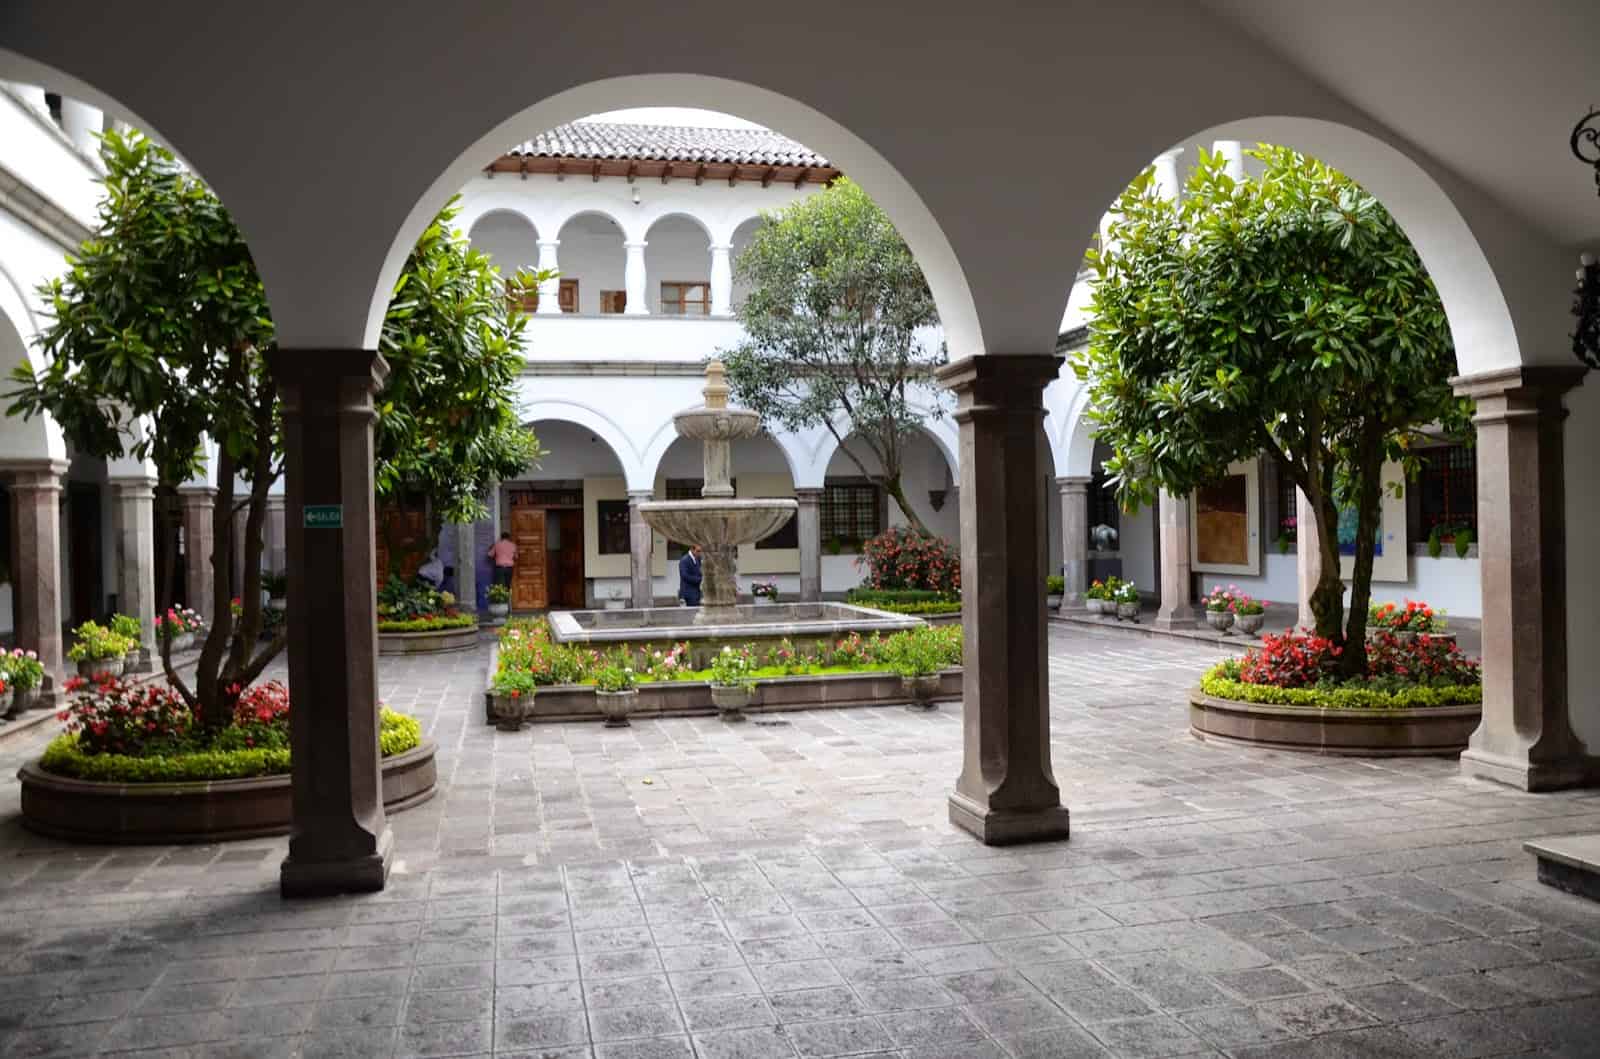 Courtyard at Palacio de Carondelet on Plaza Grande in Quito, Ecuador